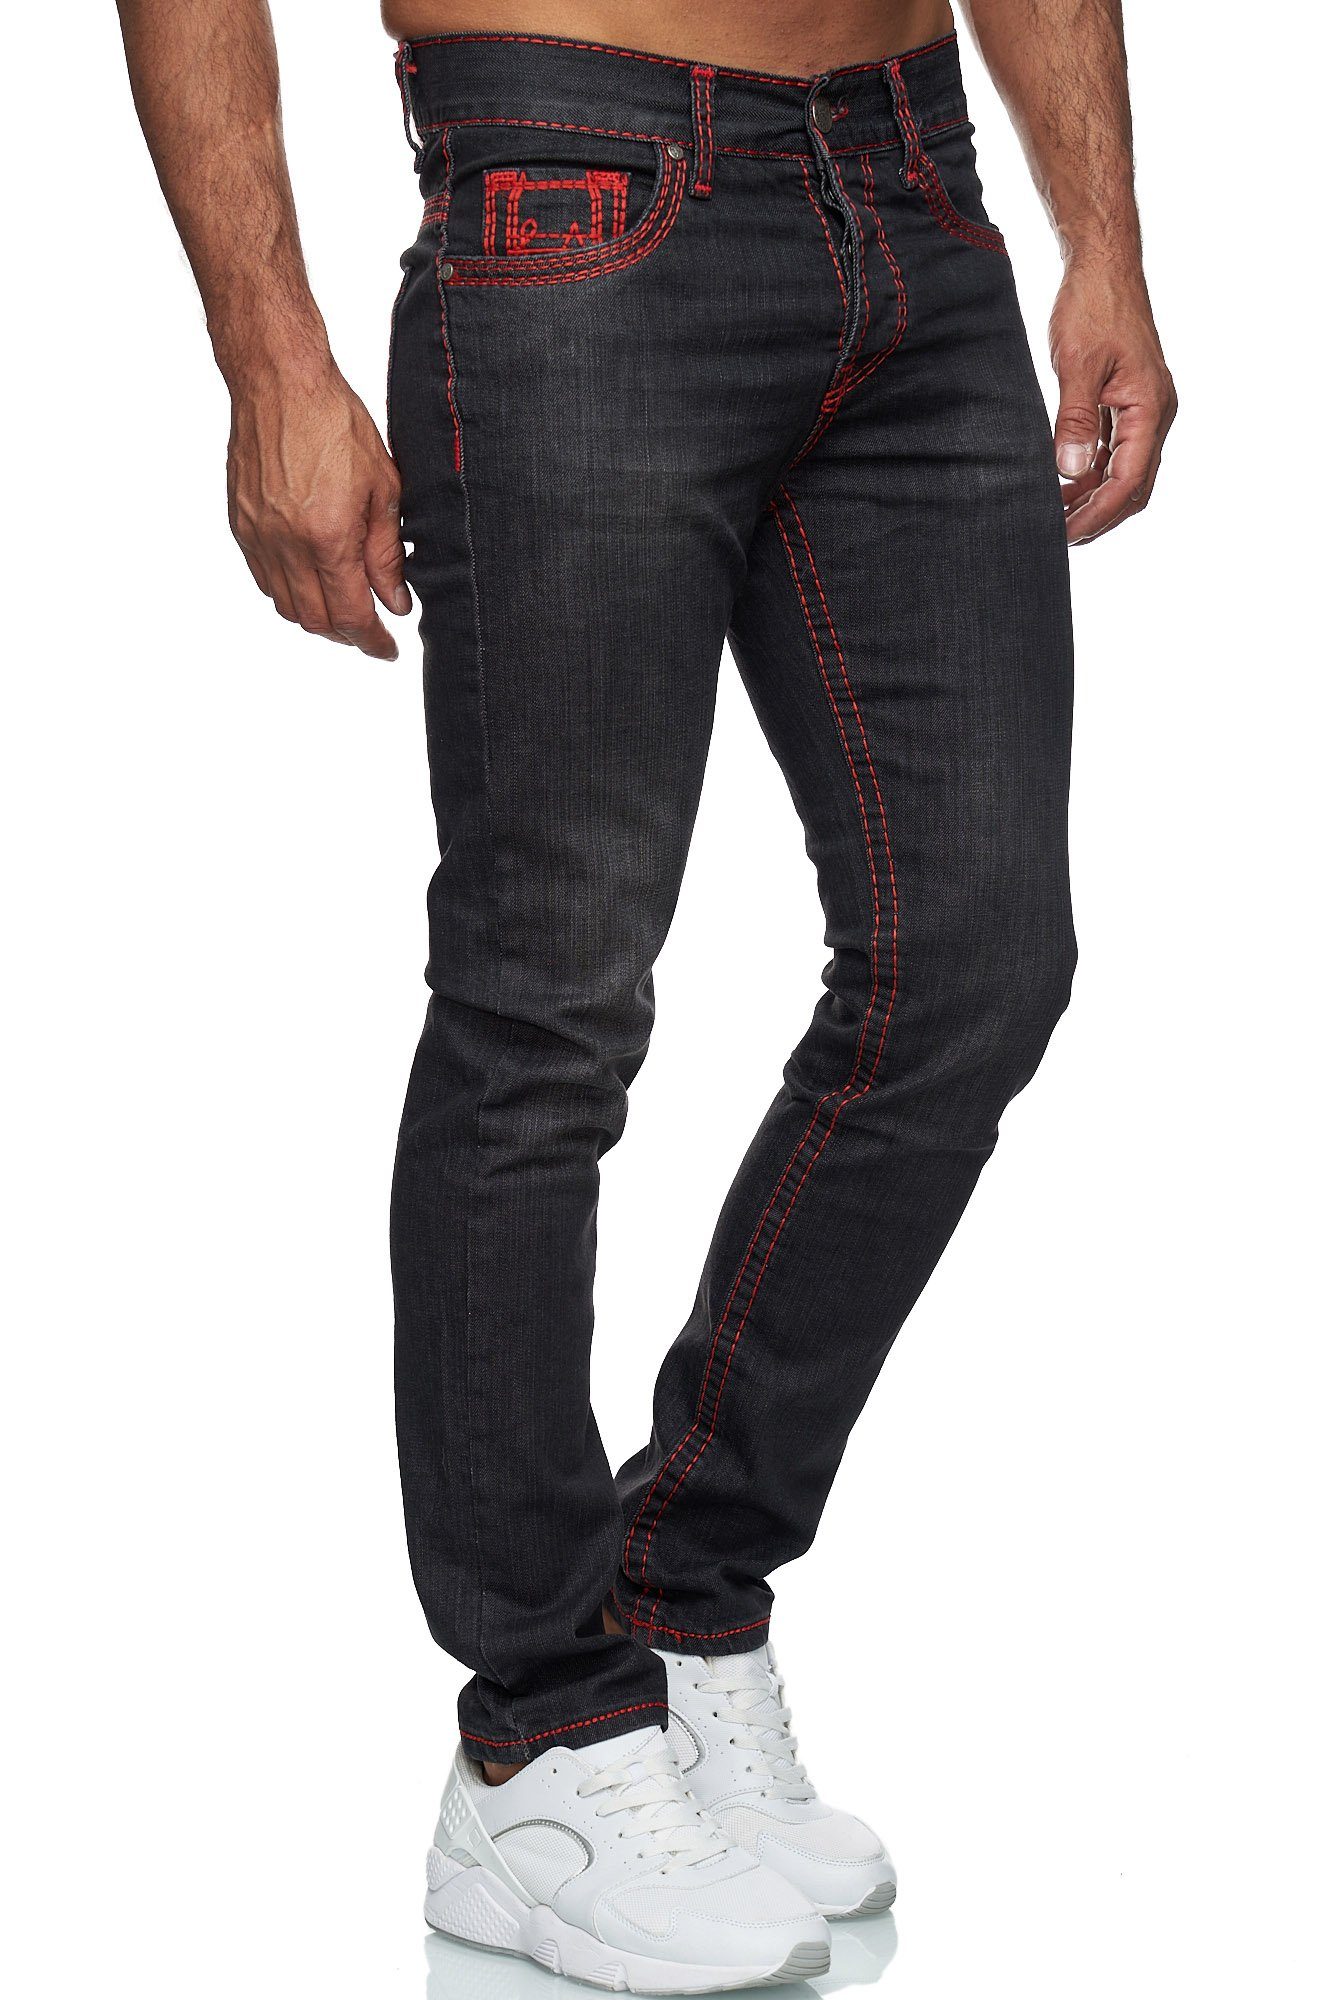 Schwarz_Rot Baxboy Straight 9574 Dicke Stonewashed Jeans Neon-Naht Fit Stretch Denim Herren Regular-fit-Jeans